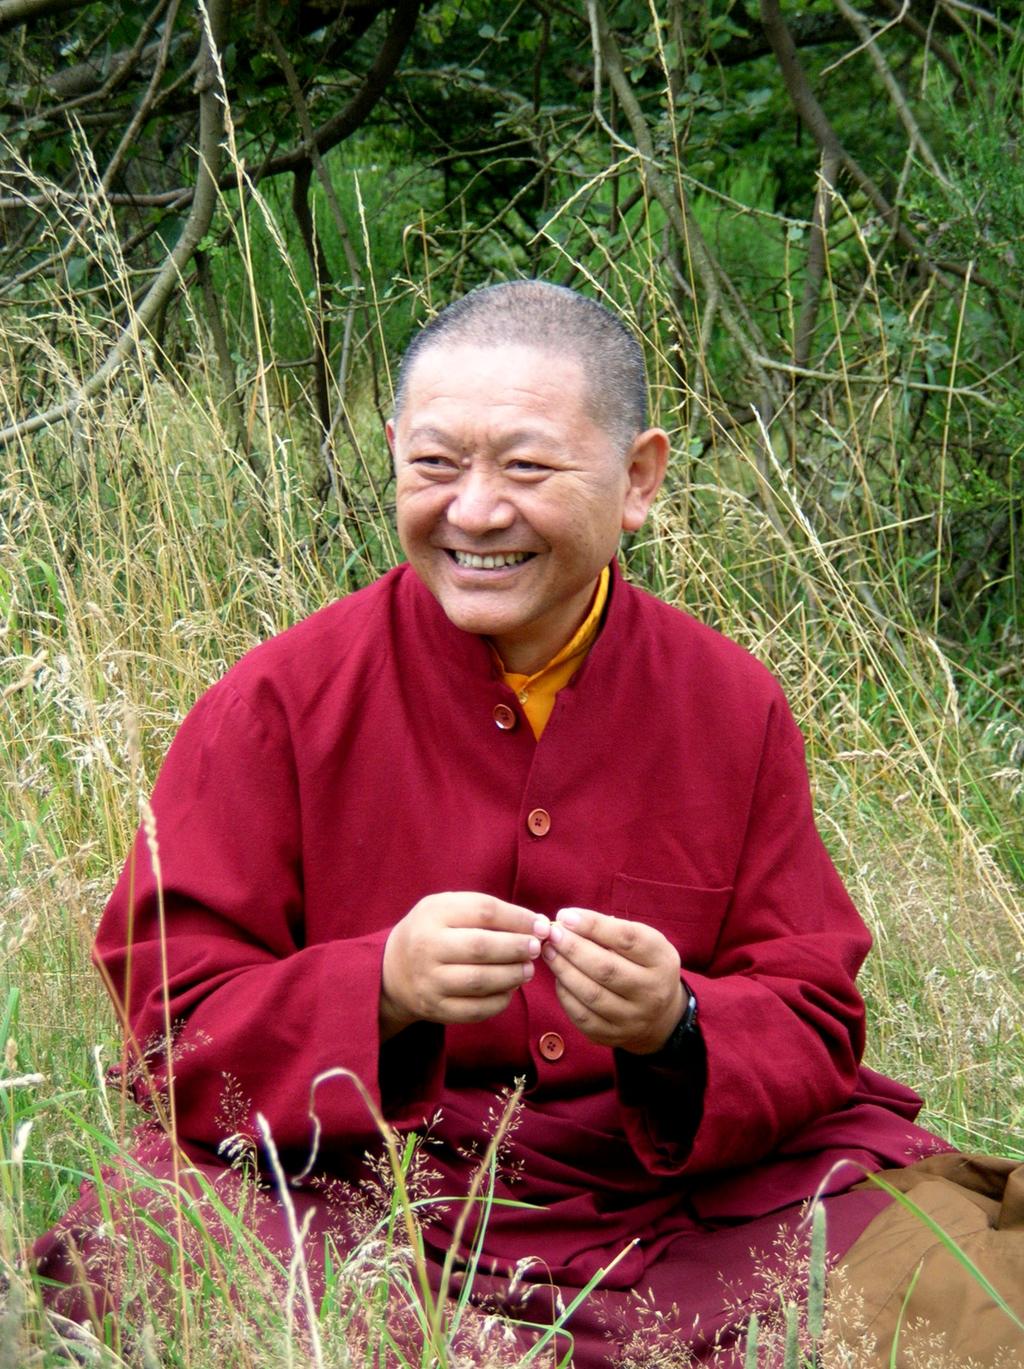 Venerable Ringu Tulku Rinpoche Buddhism & Ecology Presented on March 12, 2009 in the Freiherr von Stein-Saal of the Bezirksregierung Münster.